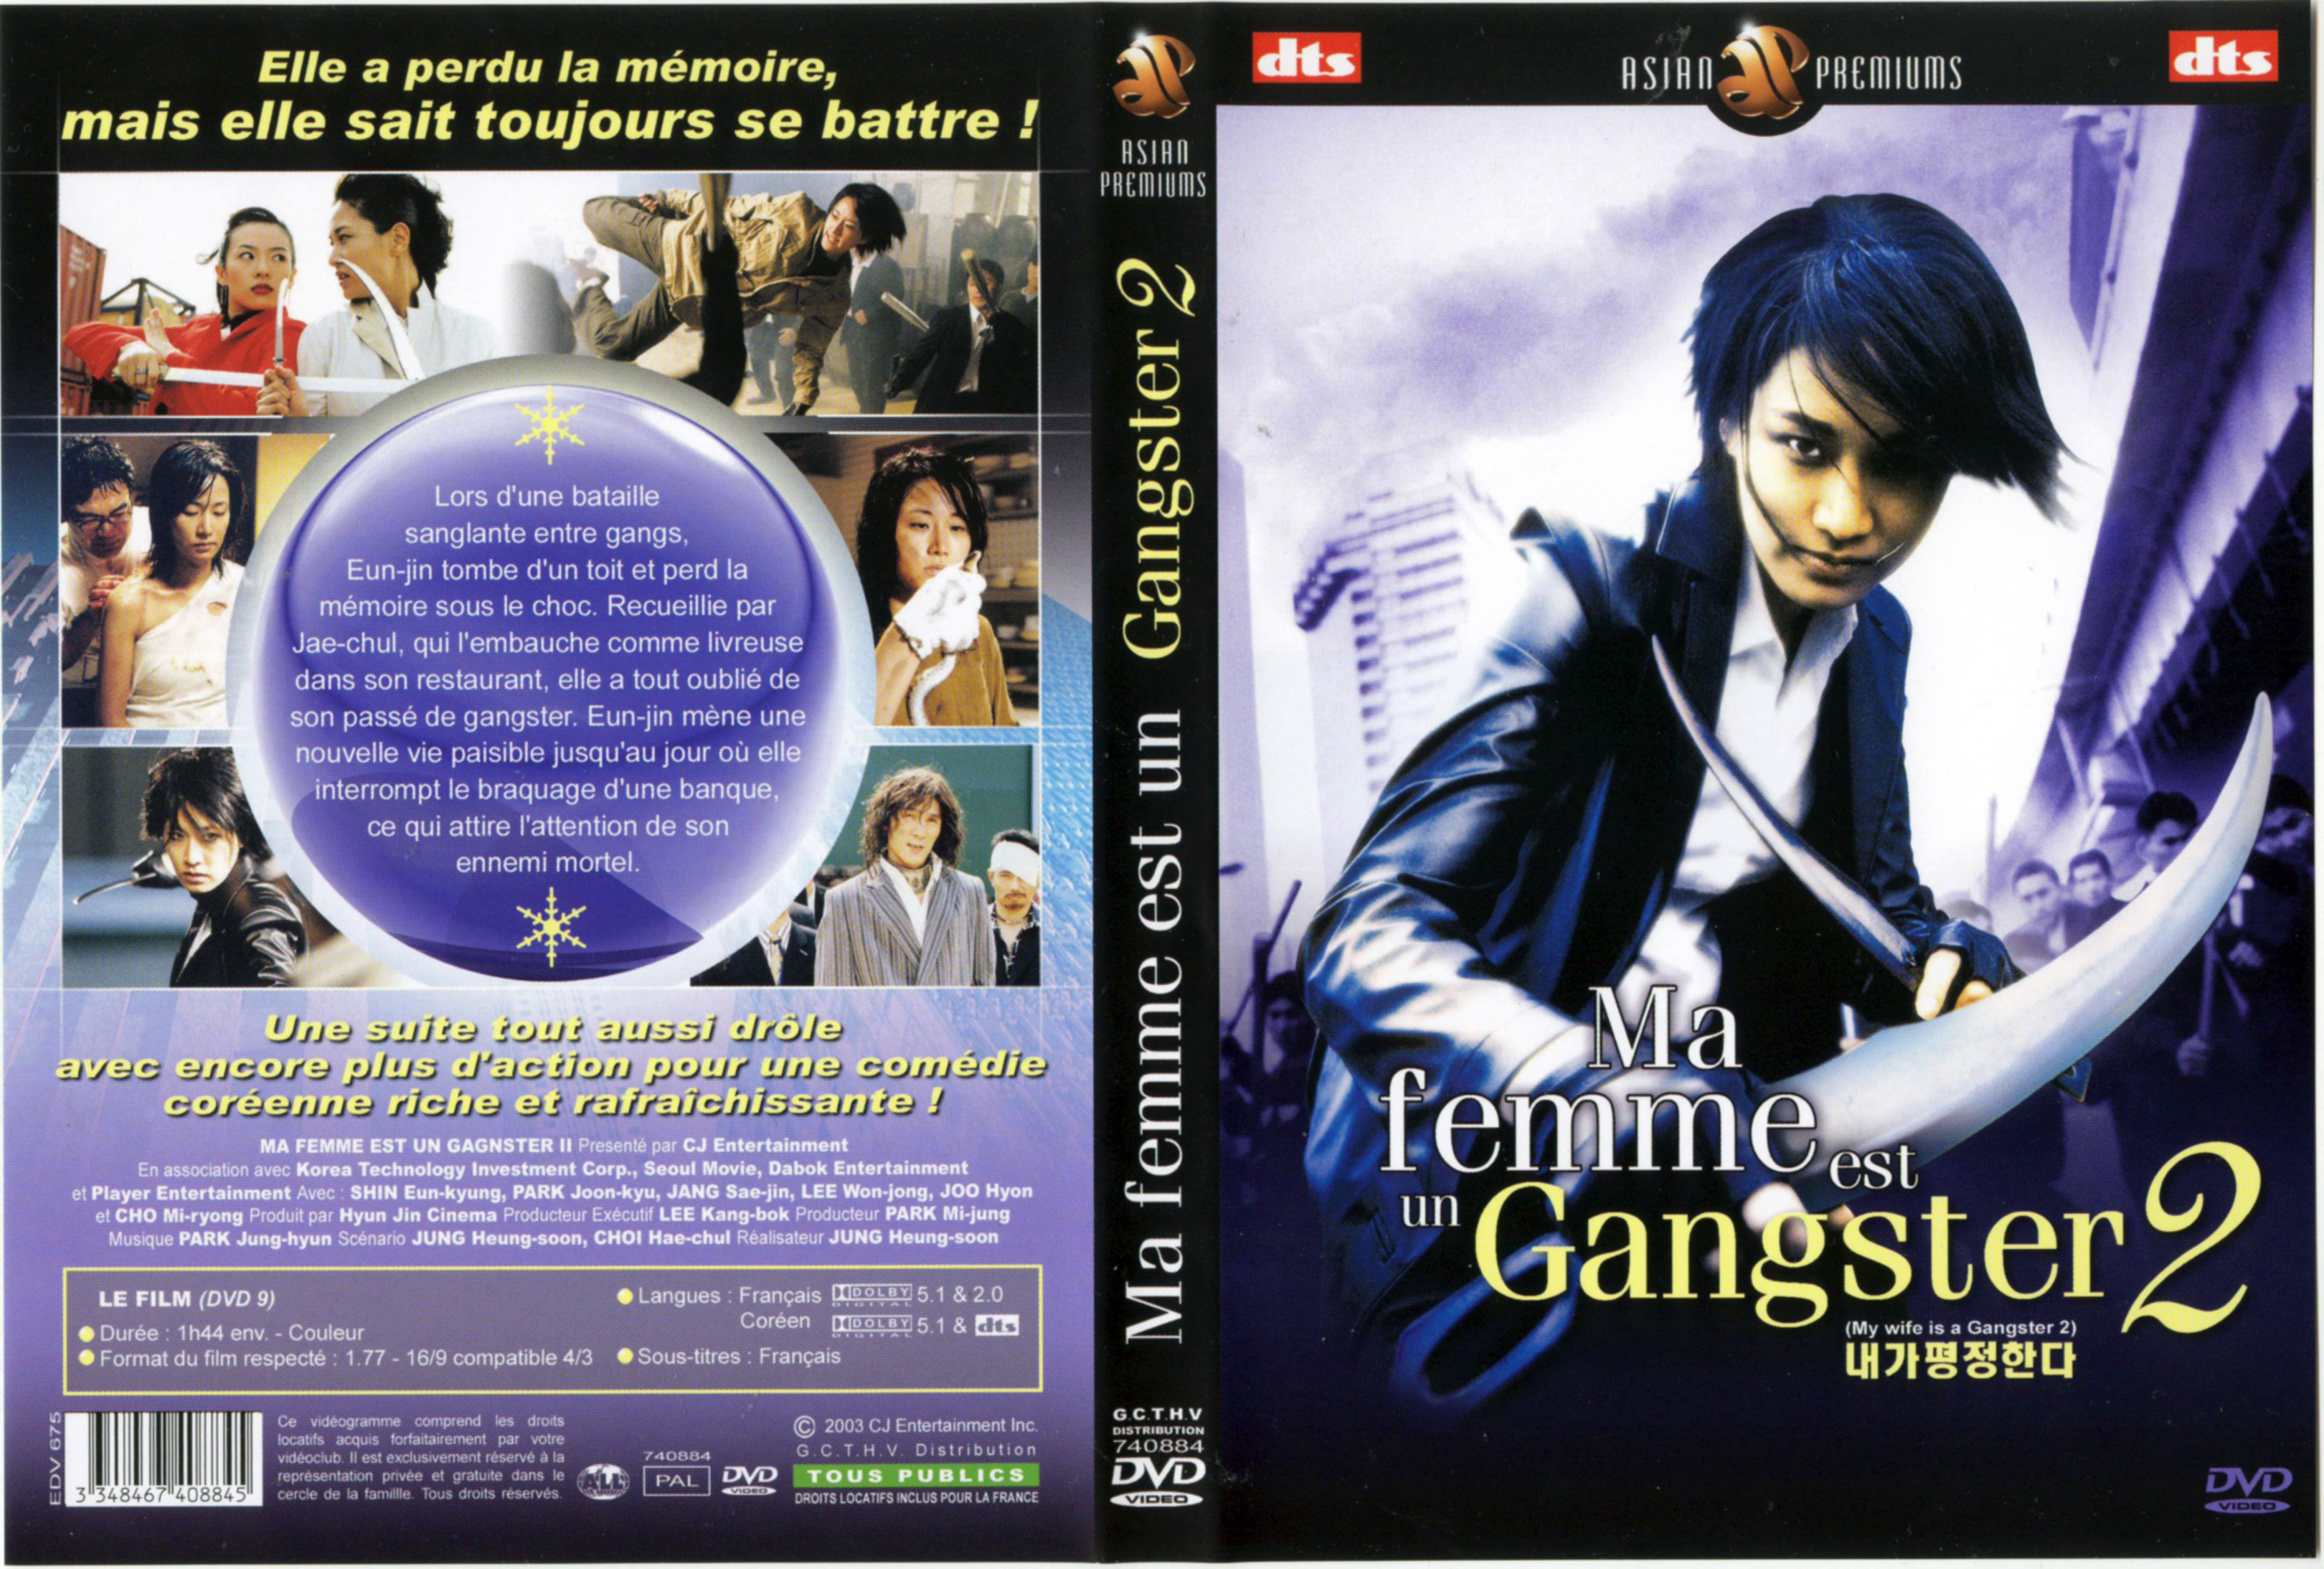 Jaquette DVD Ma femme est un gangster 2 v2